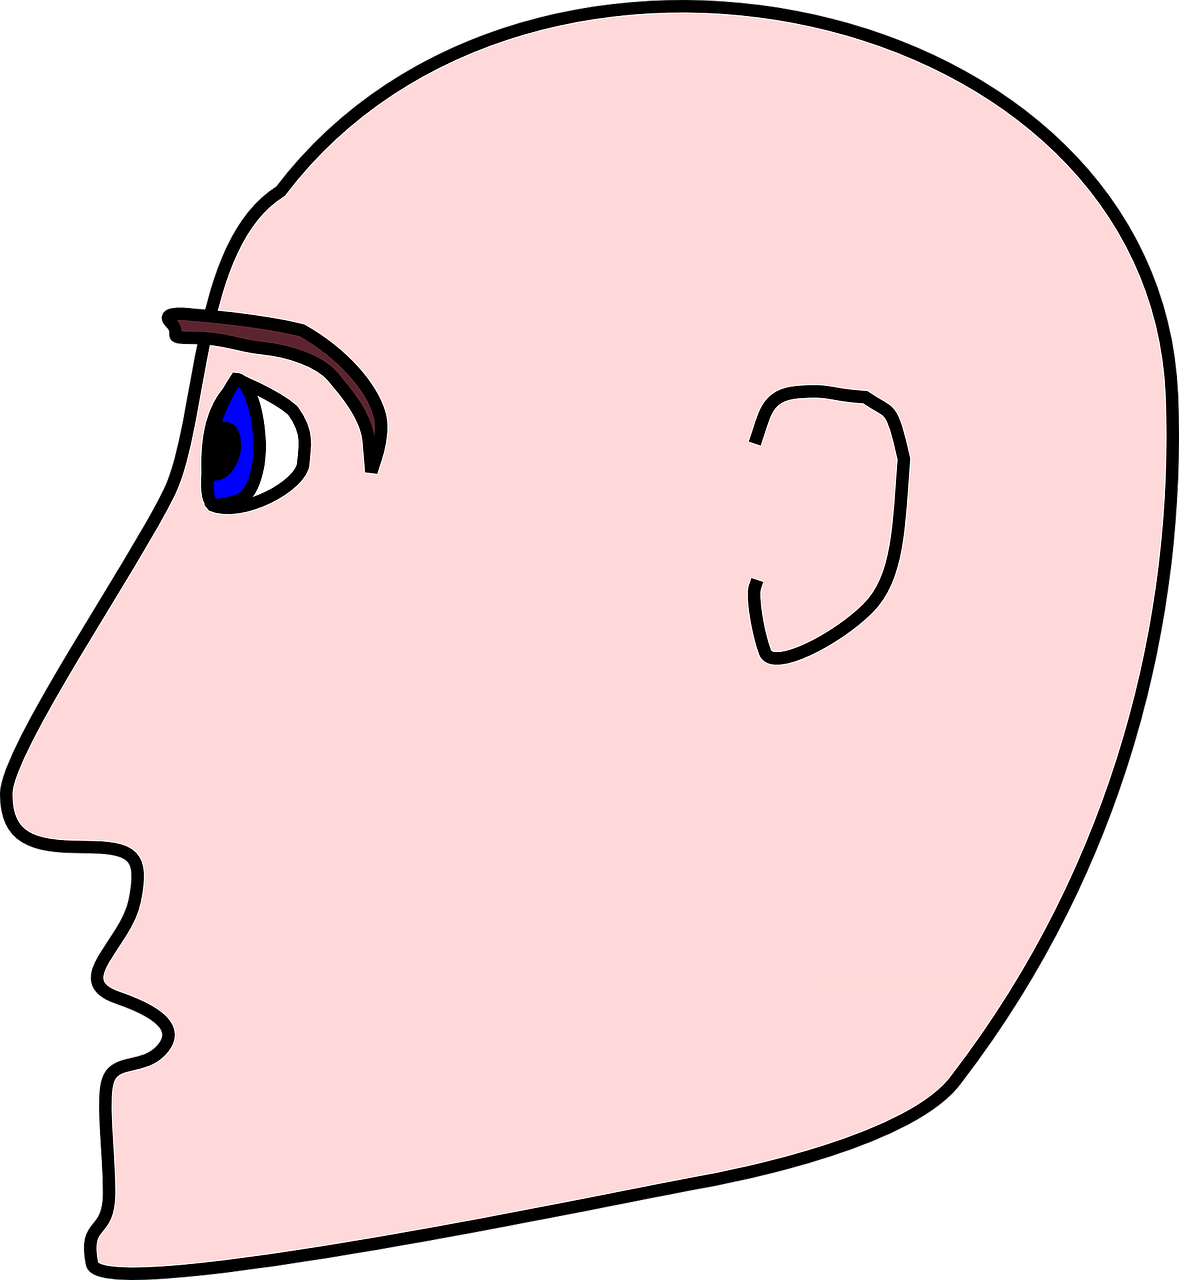 Bald head drawing